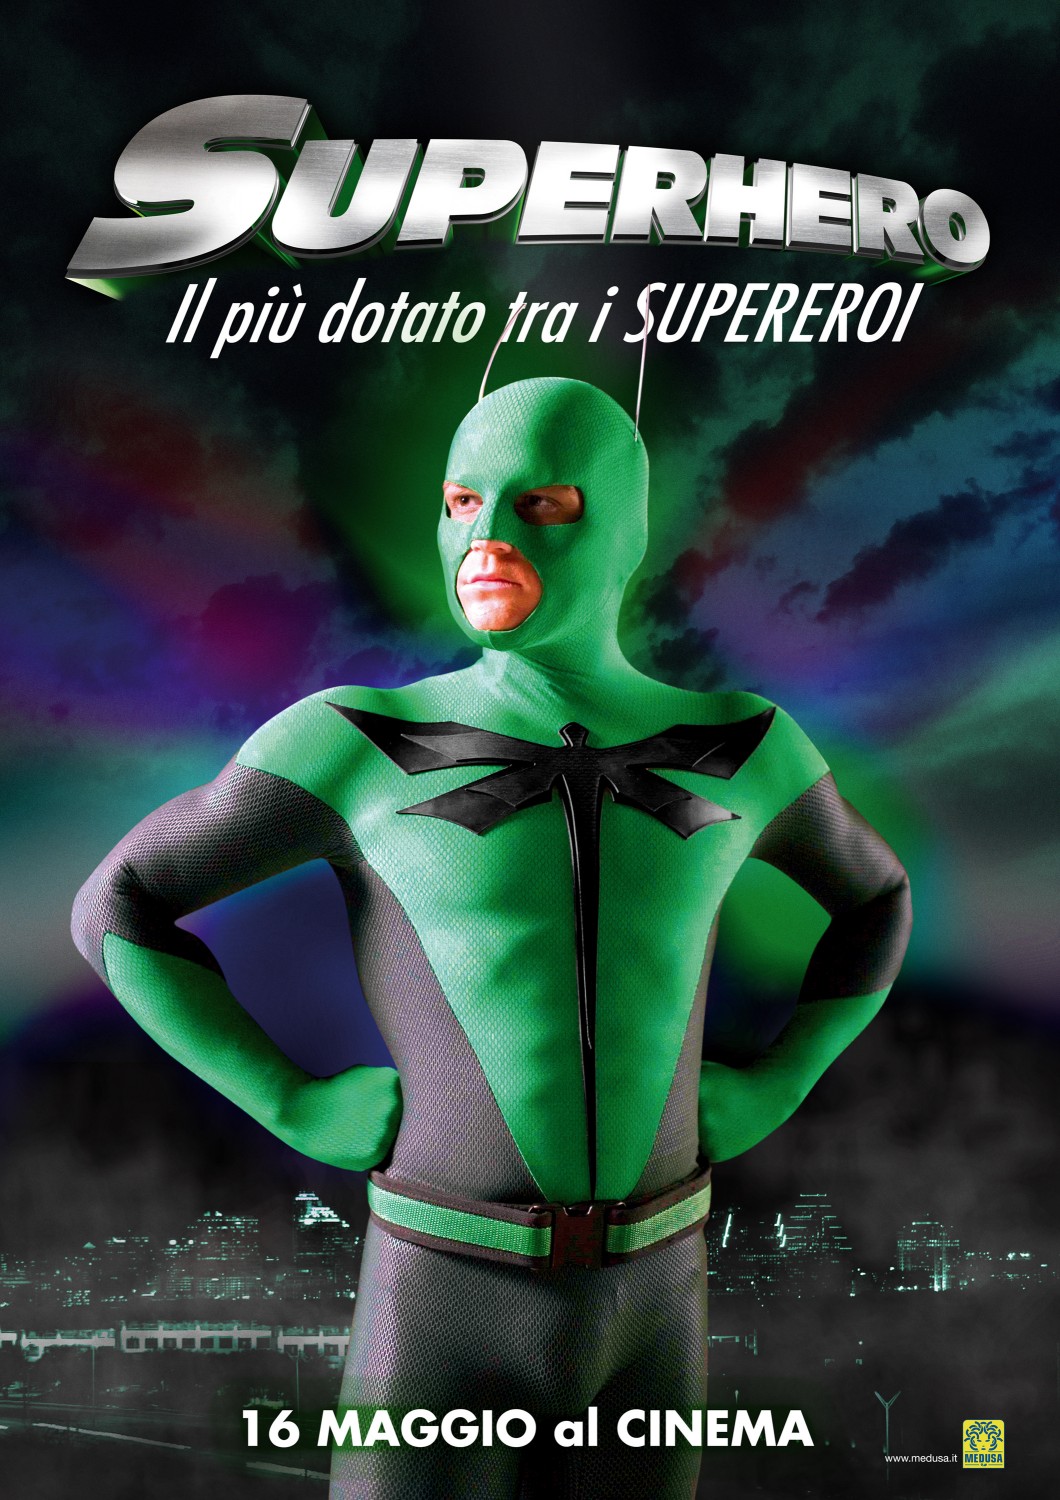 superhero movie posters